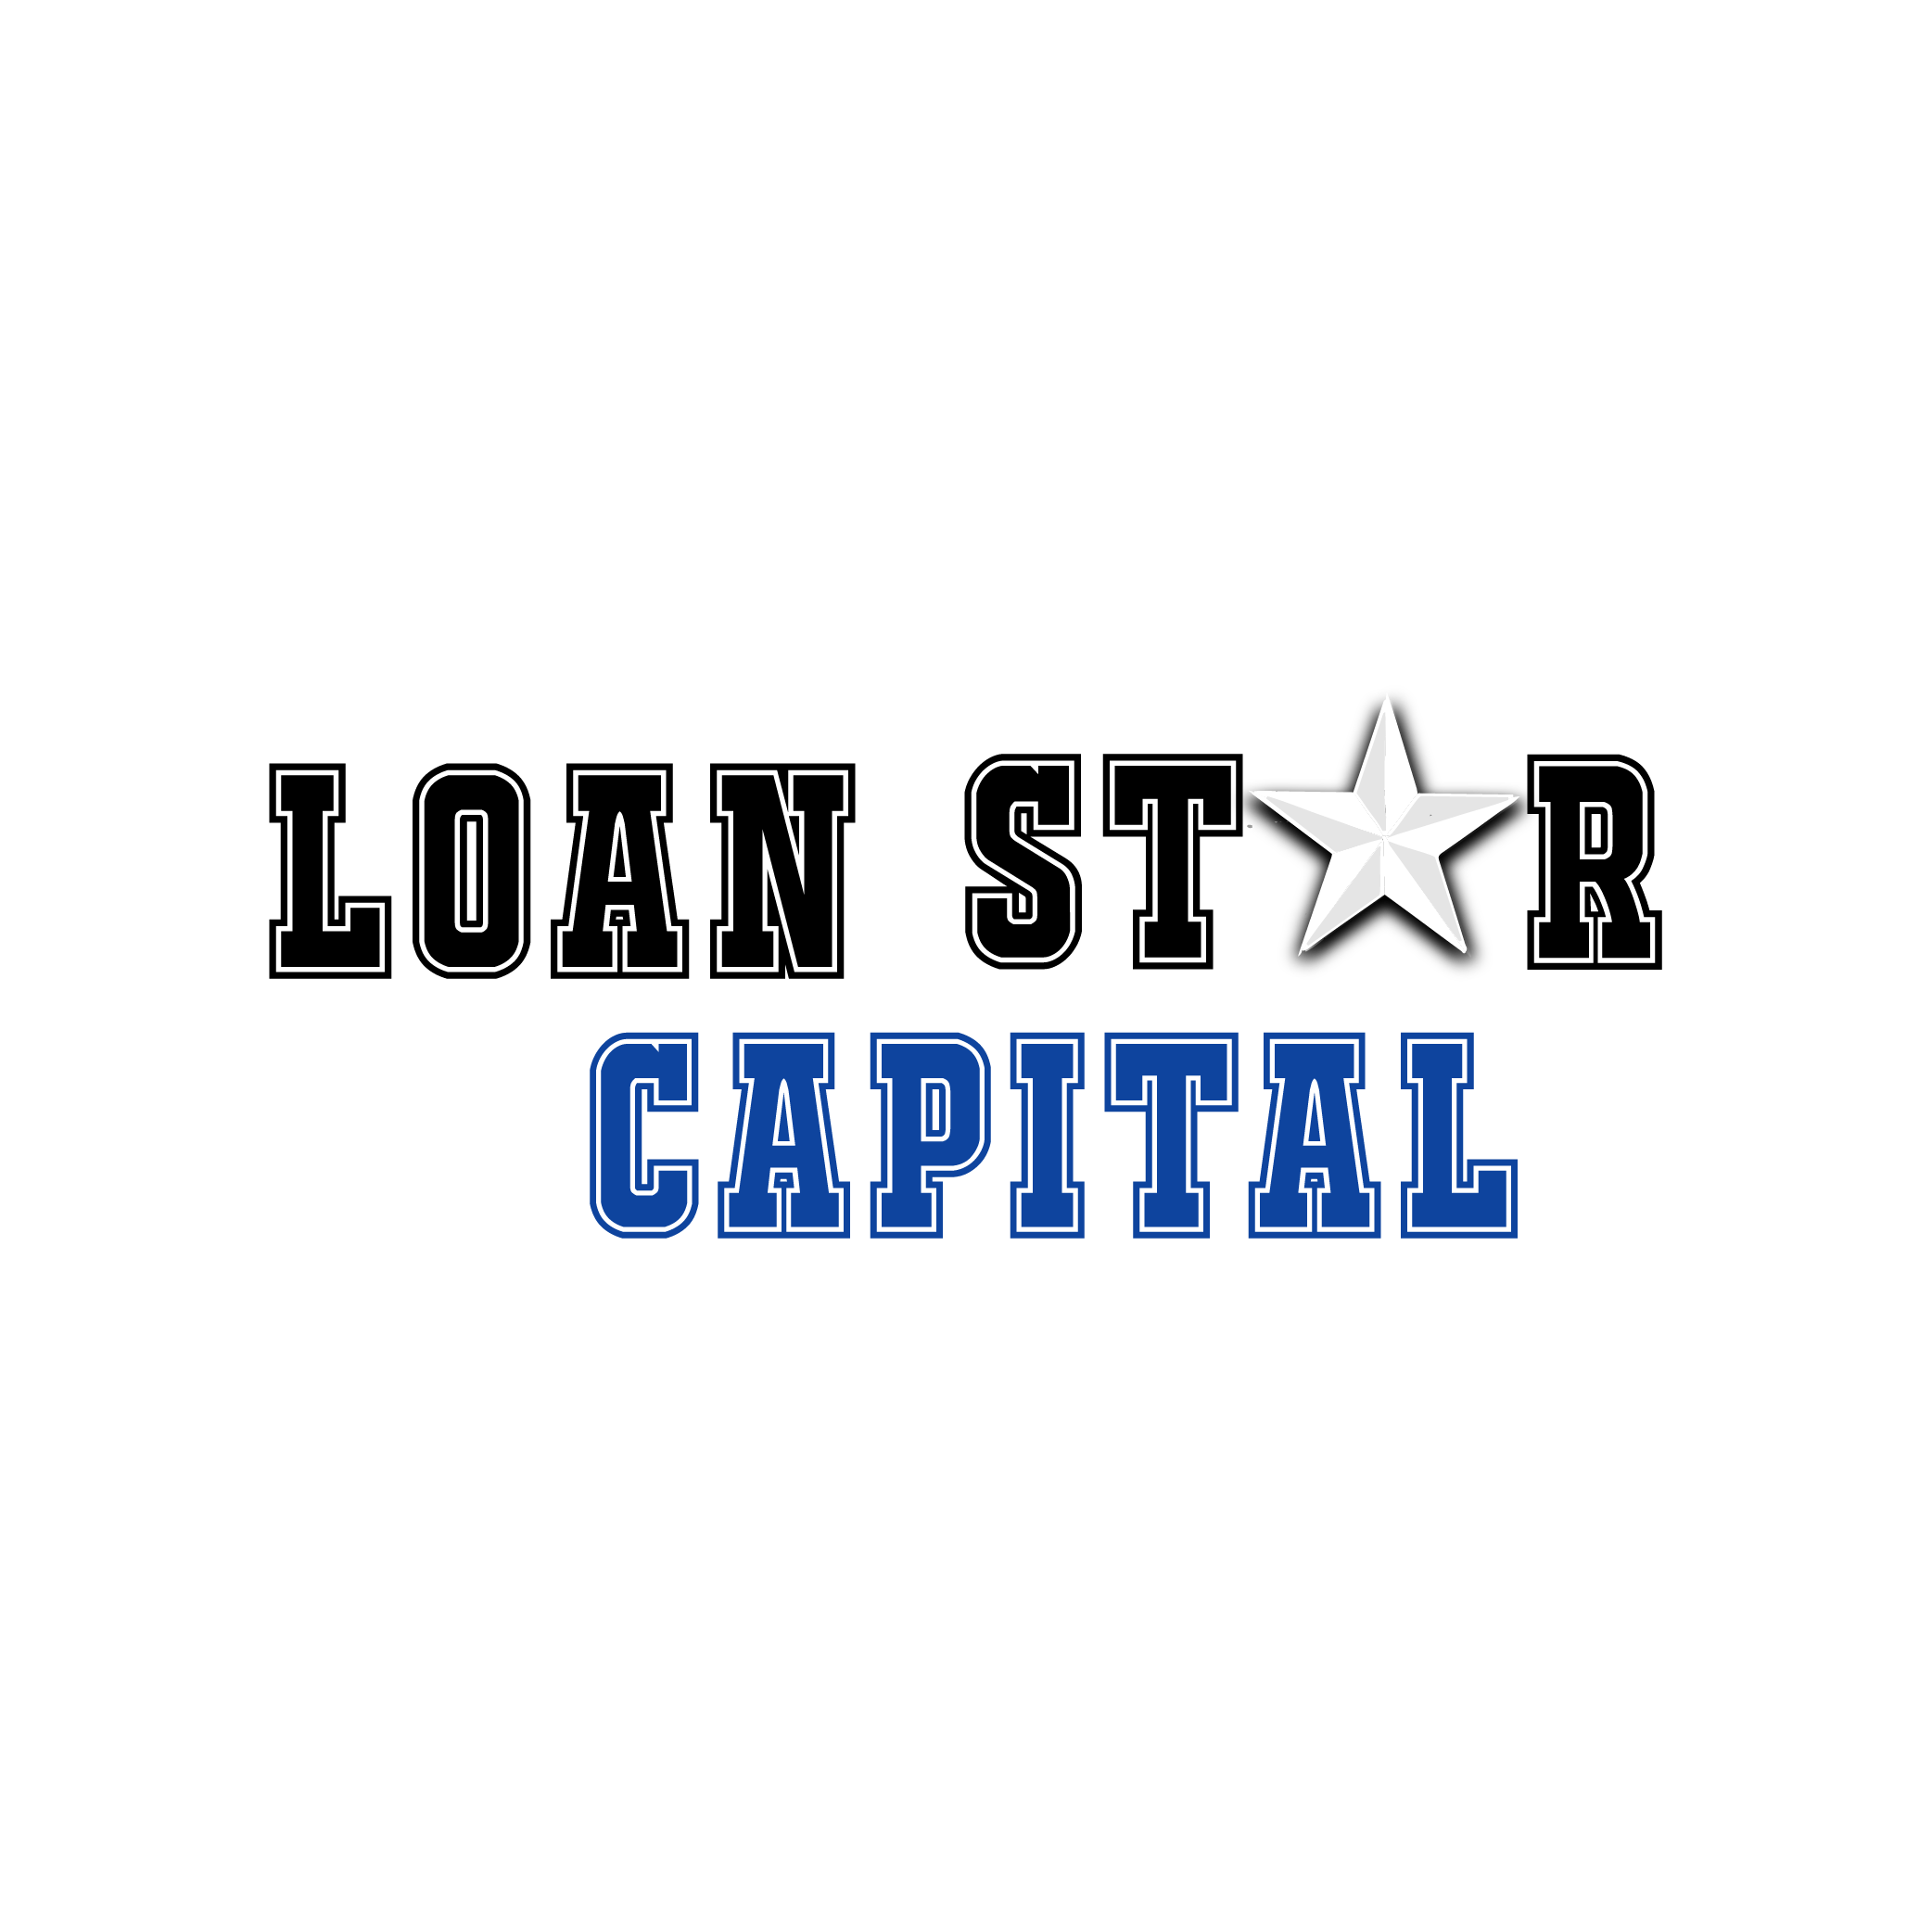 Loan Star Capital